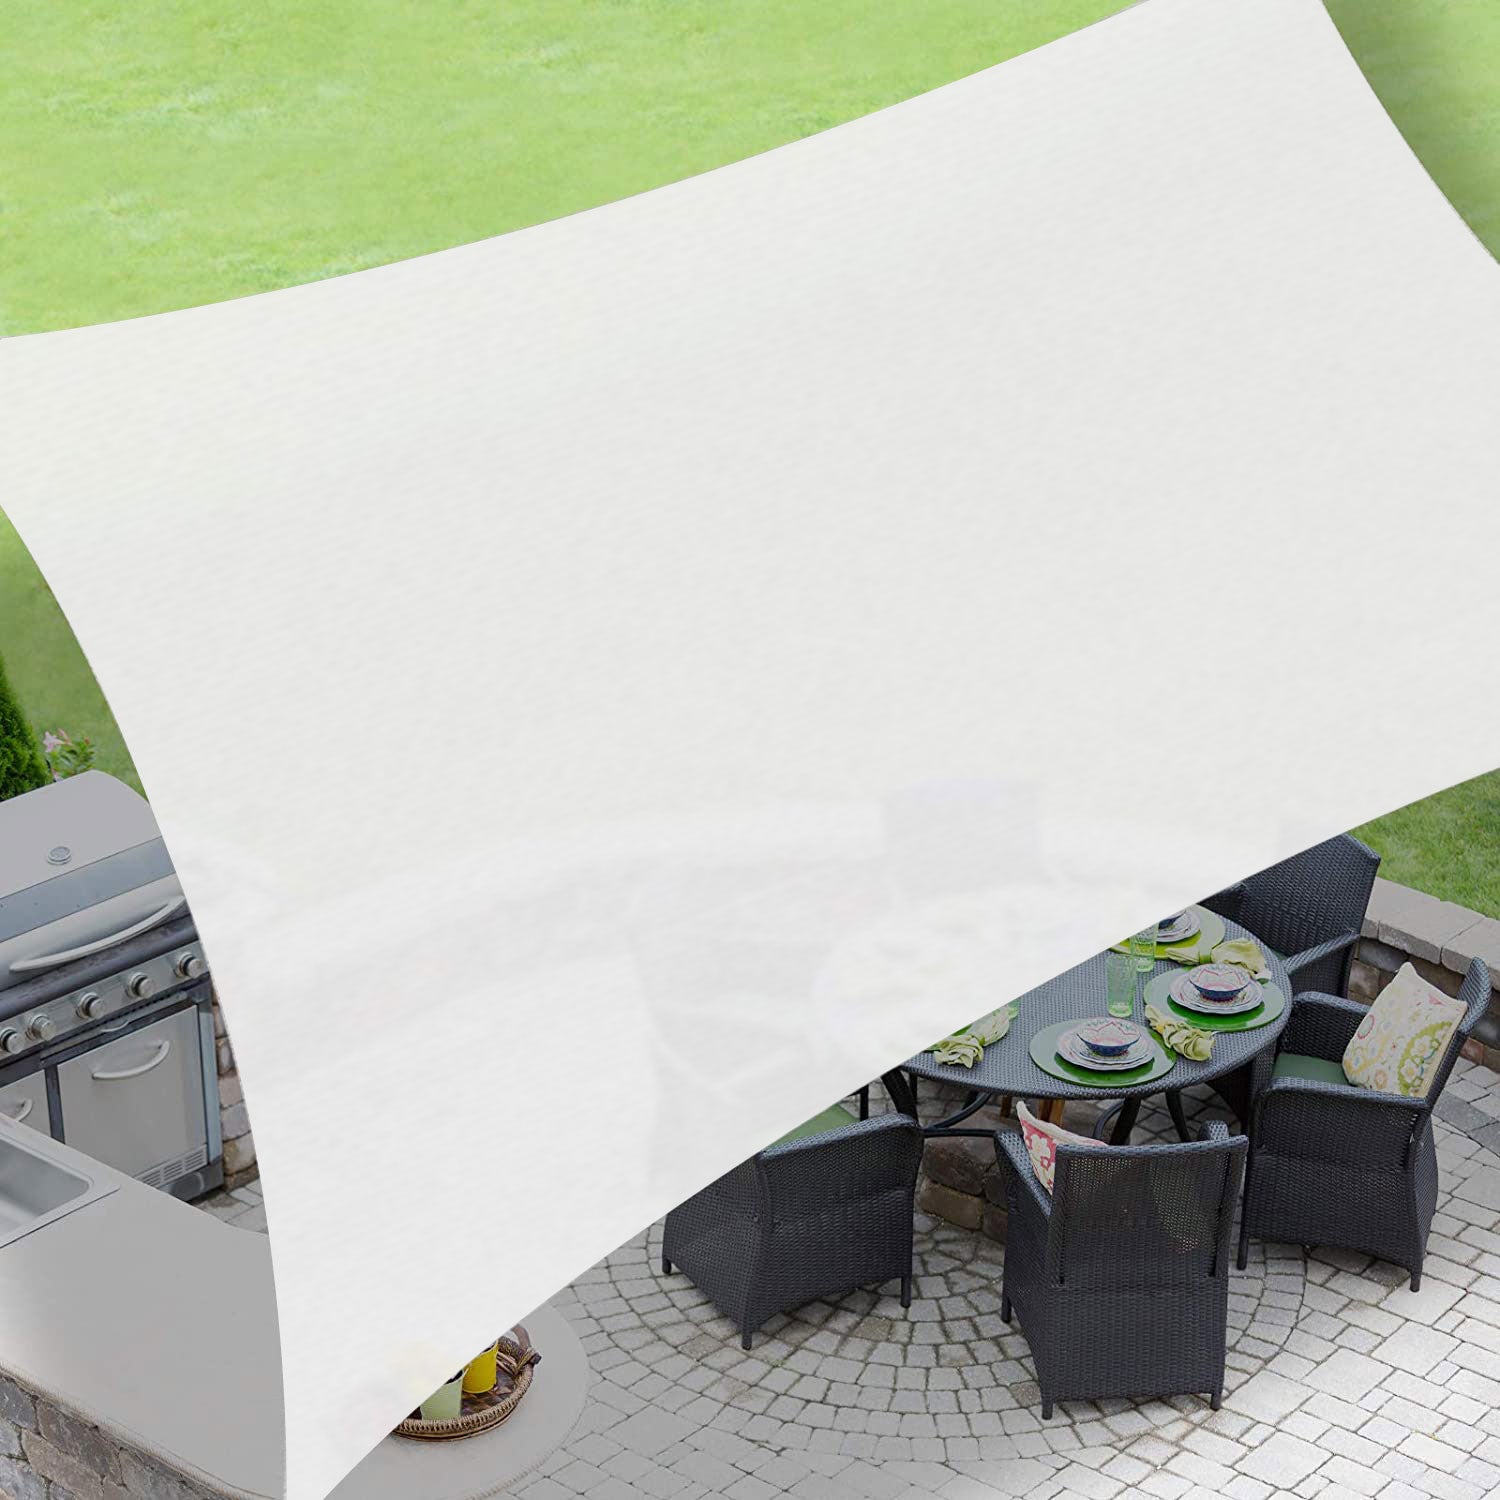 Custom Size Outdoor Sun Shade Sail Waterproof Canopy UV Block for Patio,Garden,Backyard Lawn